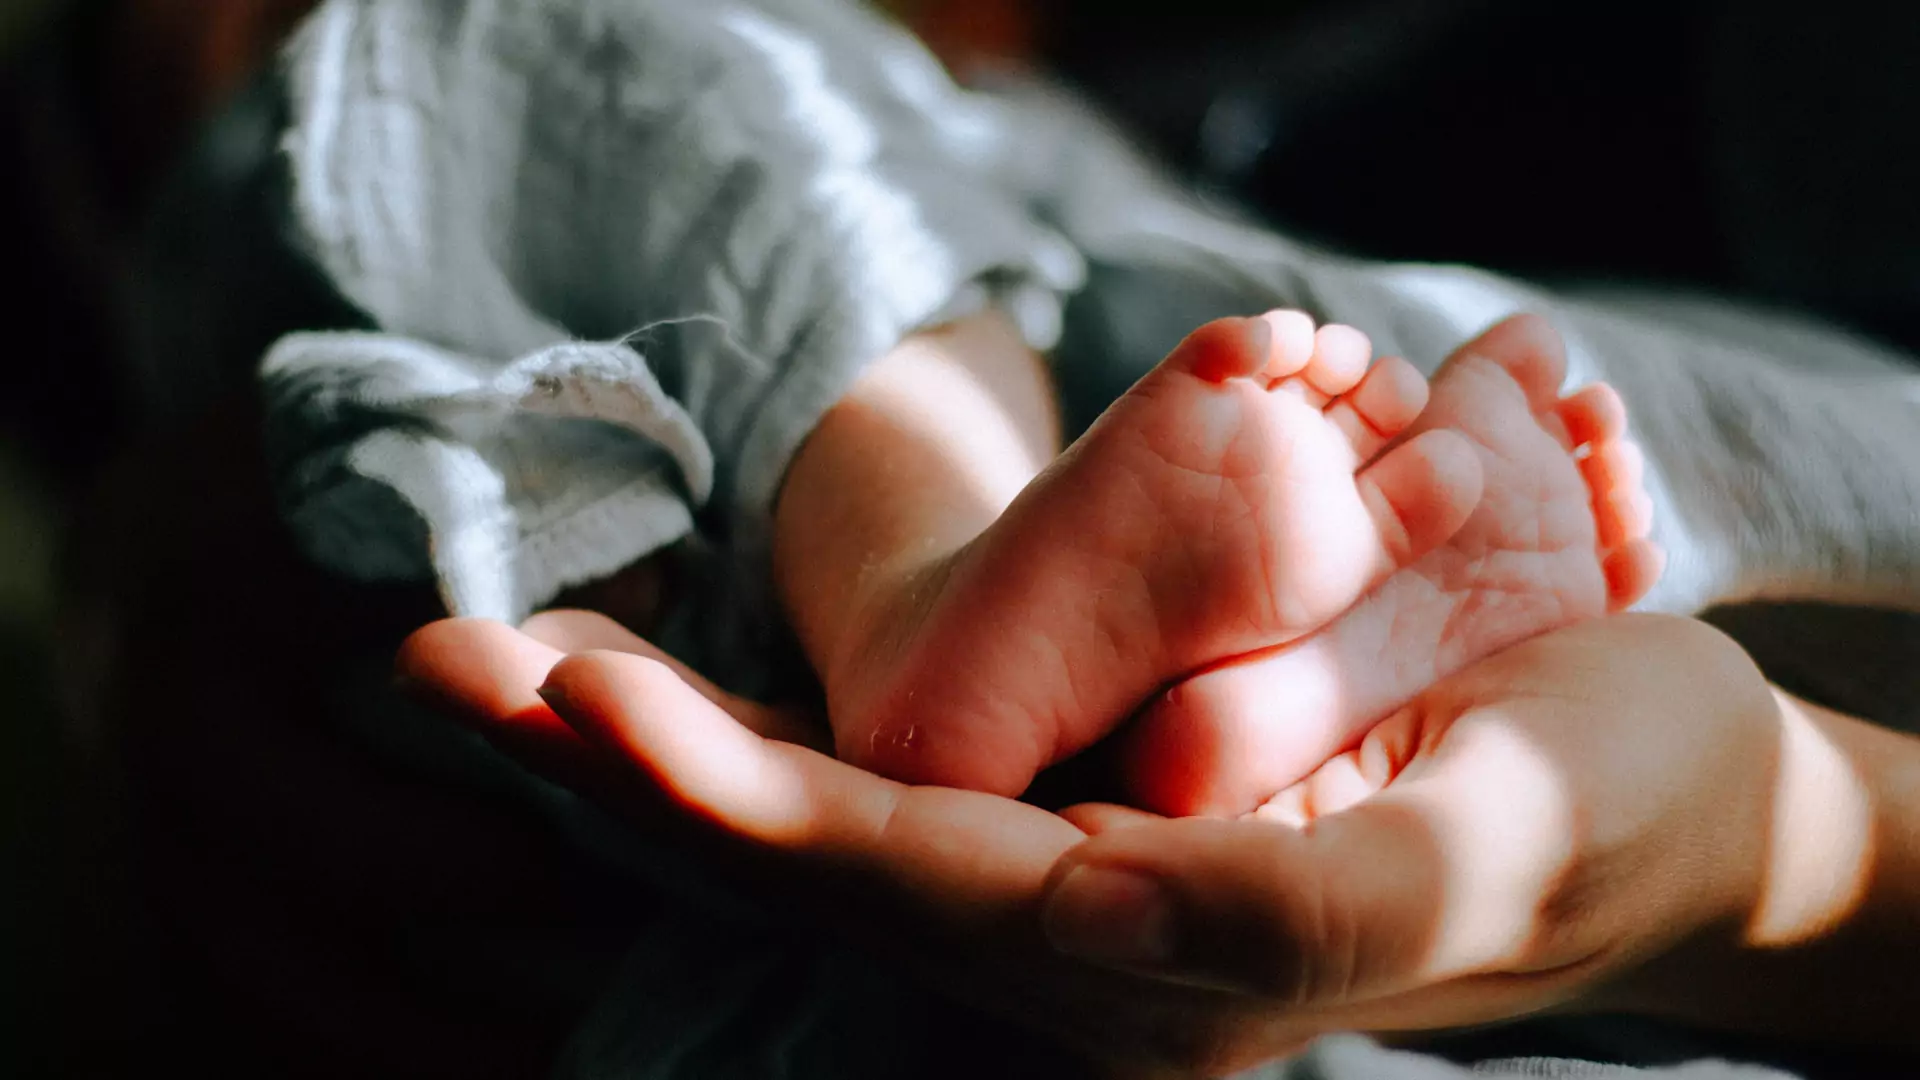 Kobieta zakażona koronawirusem nie pamiętała swojego porodu. "Nie wiedziałam, że urodziłam"